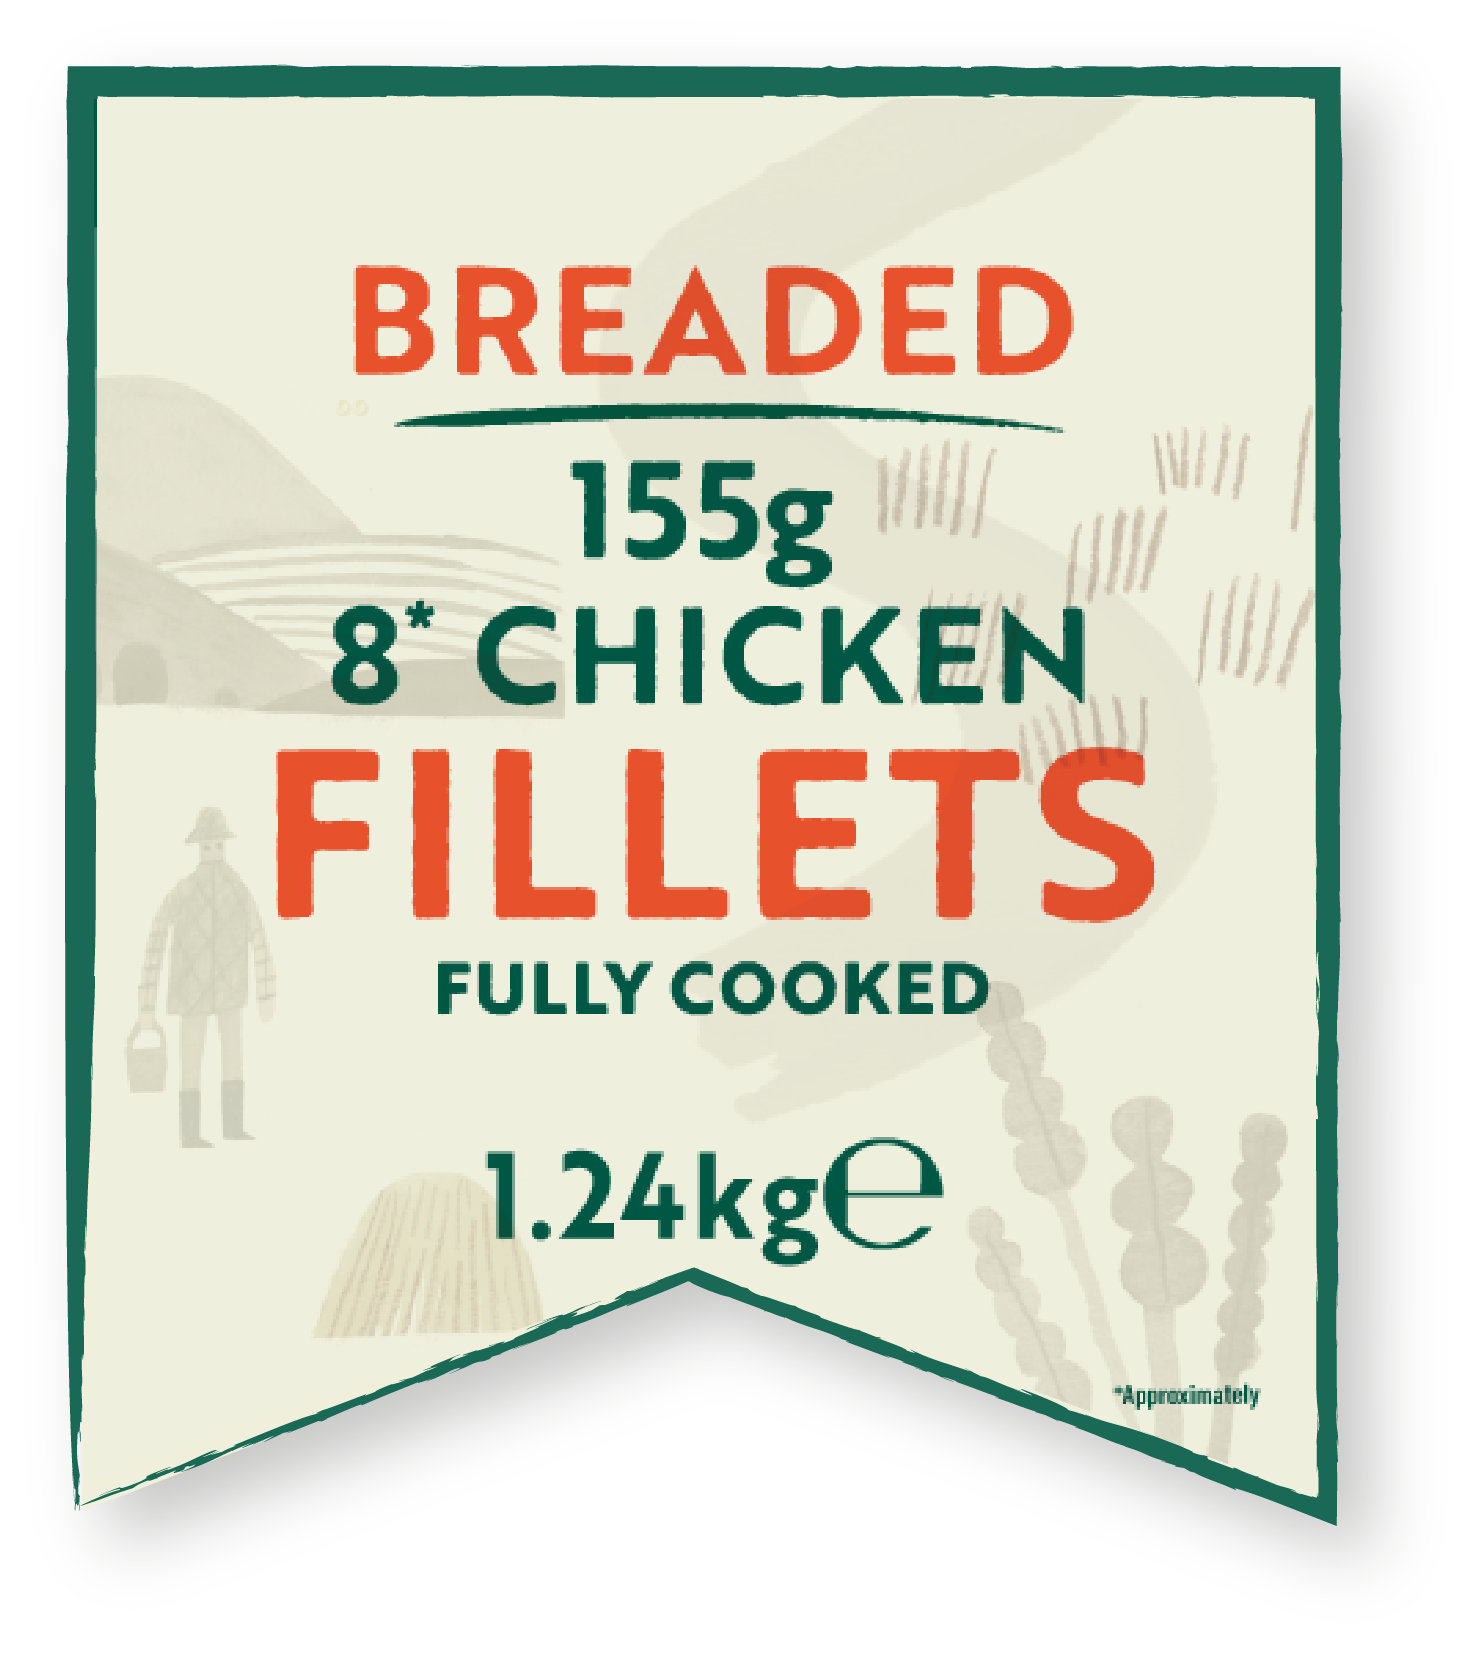 Breaded Chicken Fillets